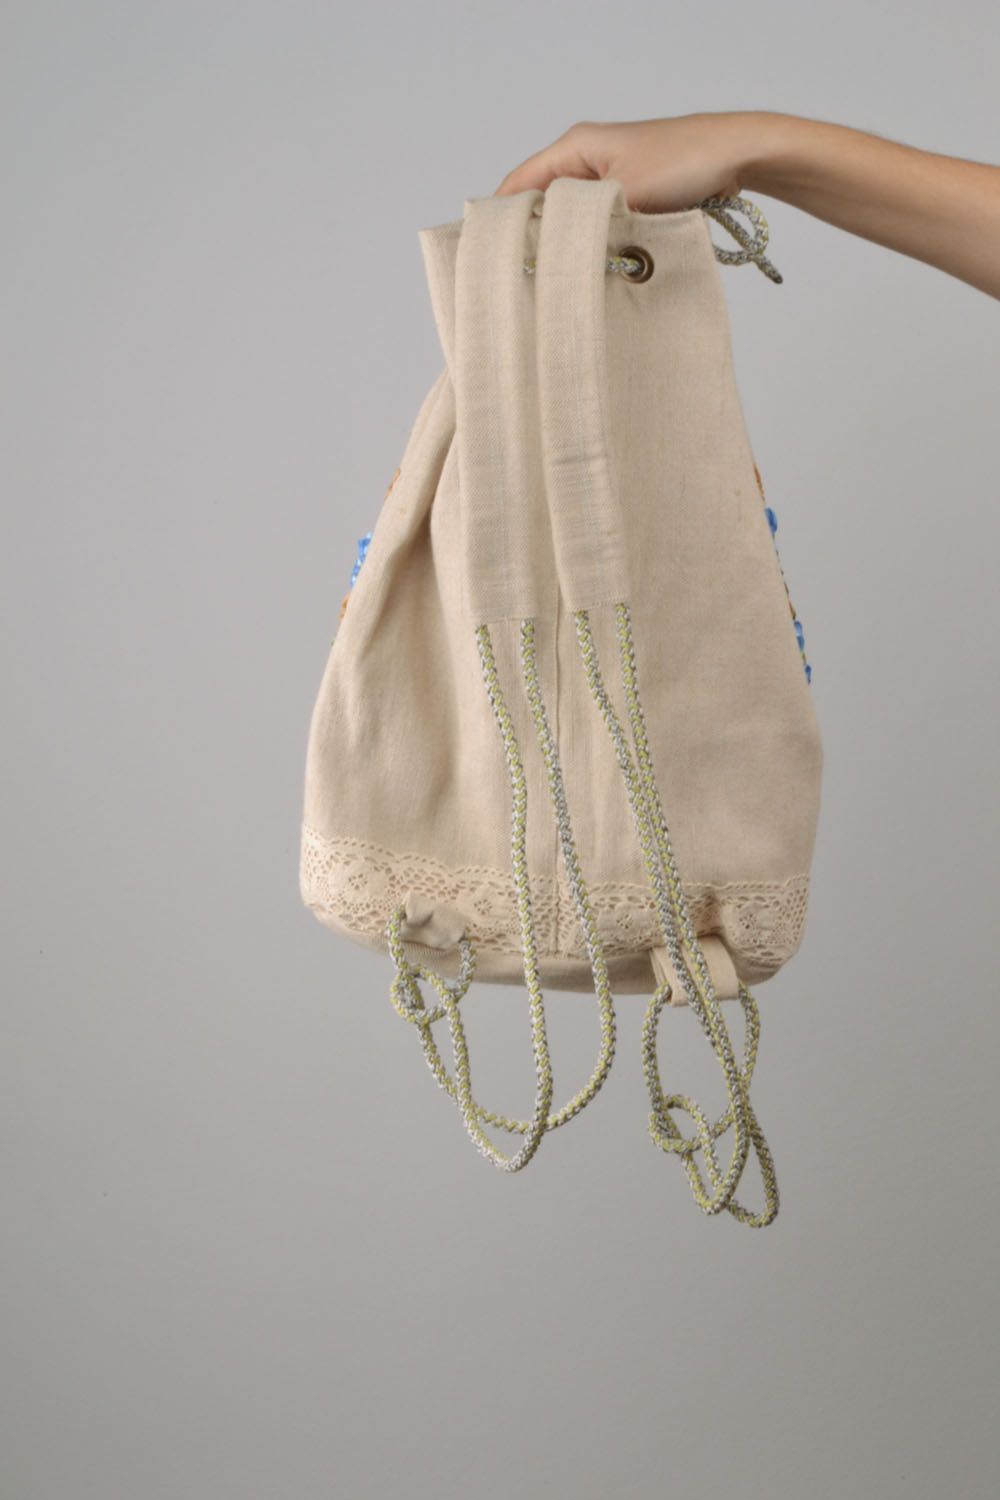 Рюкзак украшенный вышивкой атласными лентами фото 3